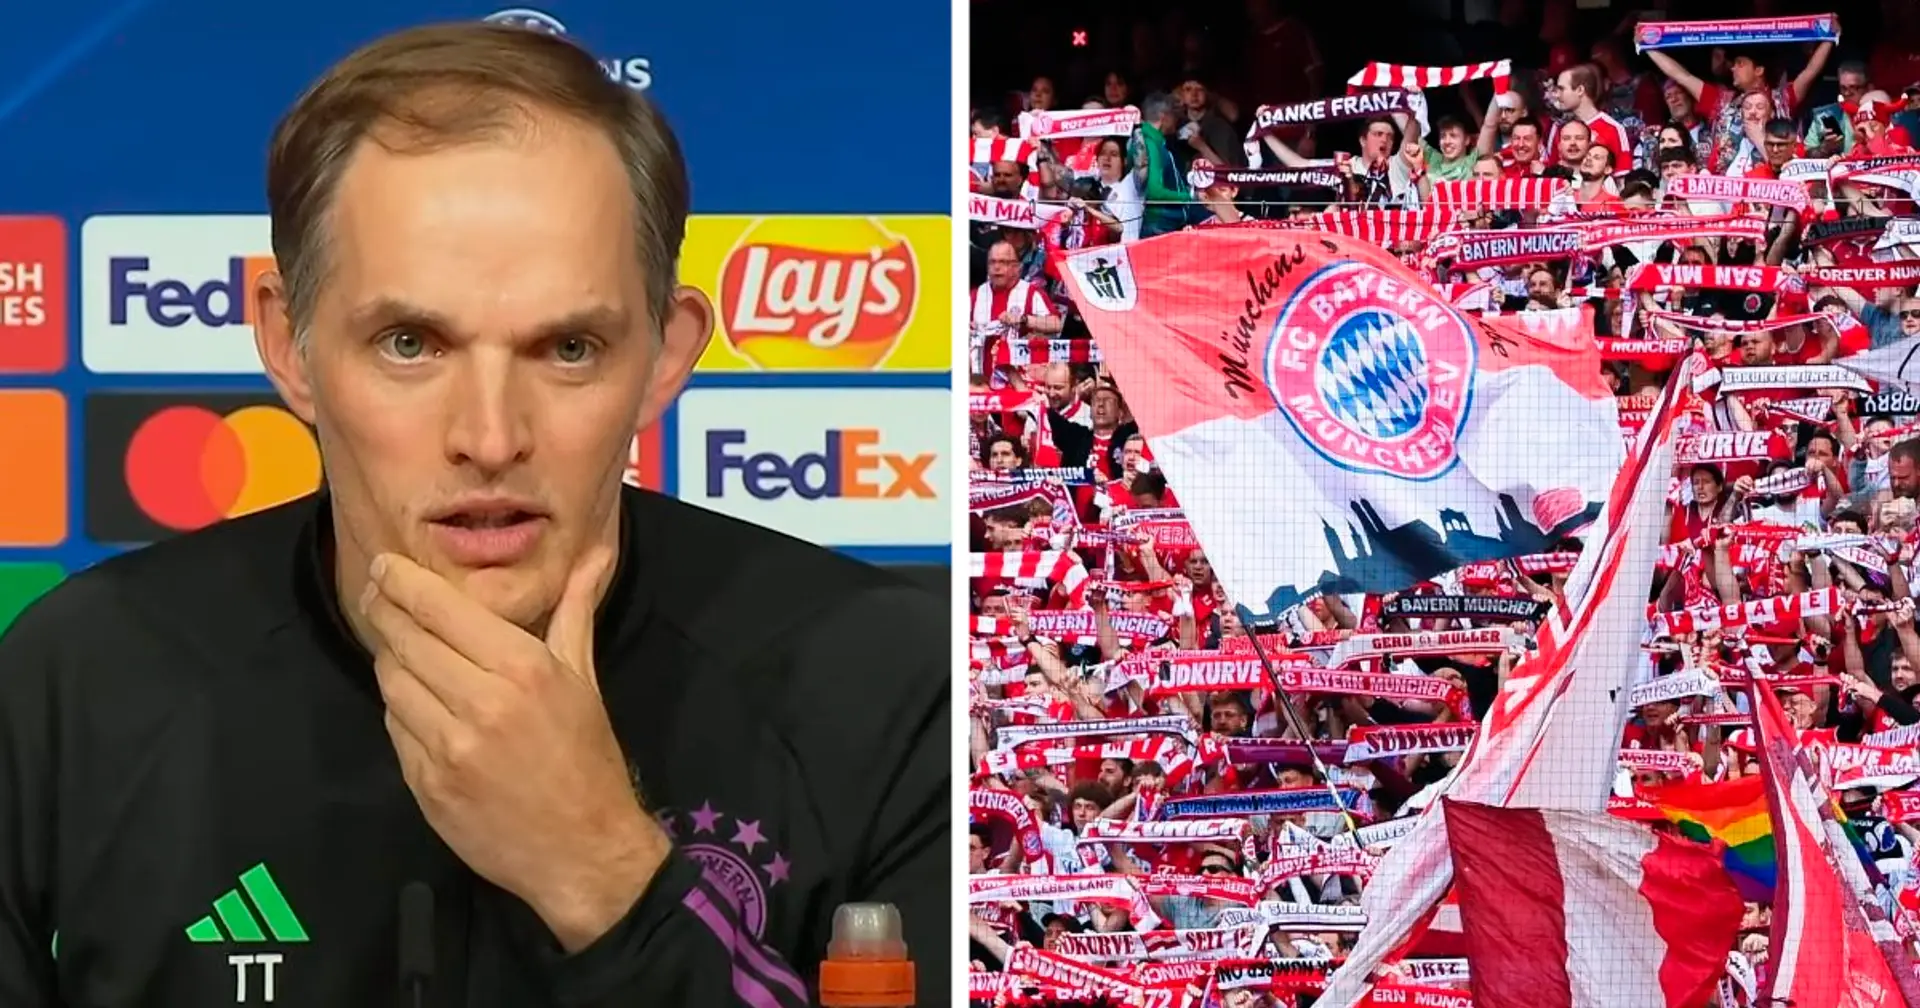 "Wir brauchen absolute Top-Atmosphäre": Tuchel richtet eine direkte Botschaft an die Bayern-Fans